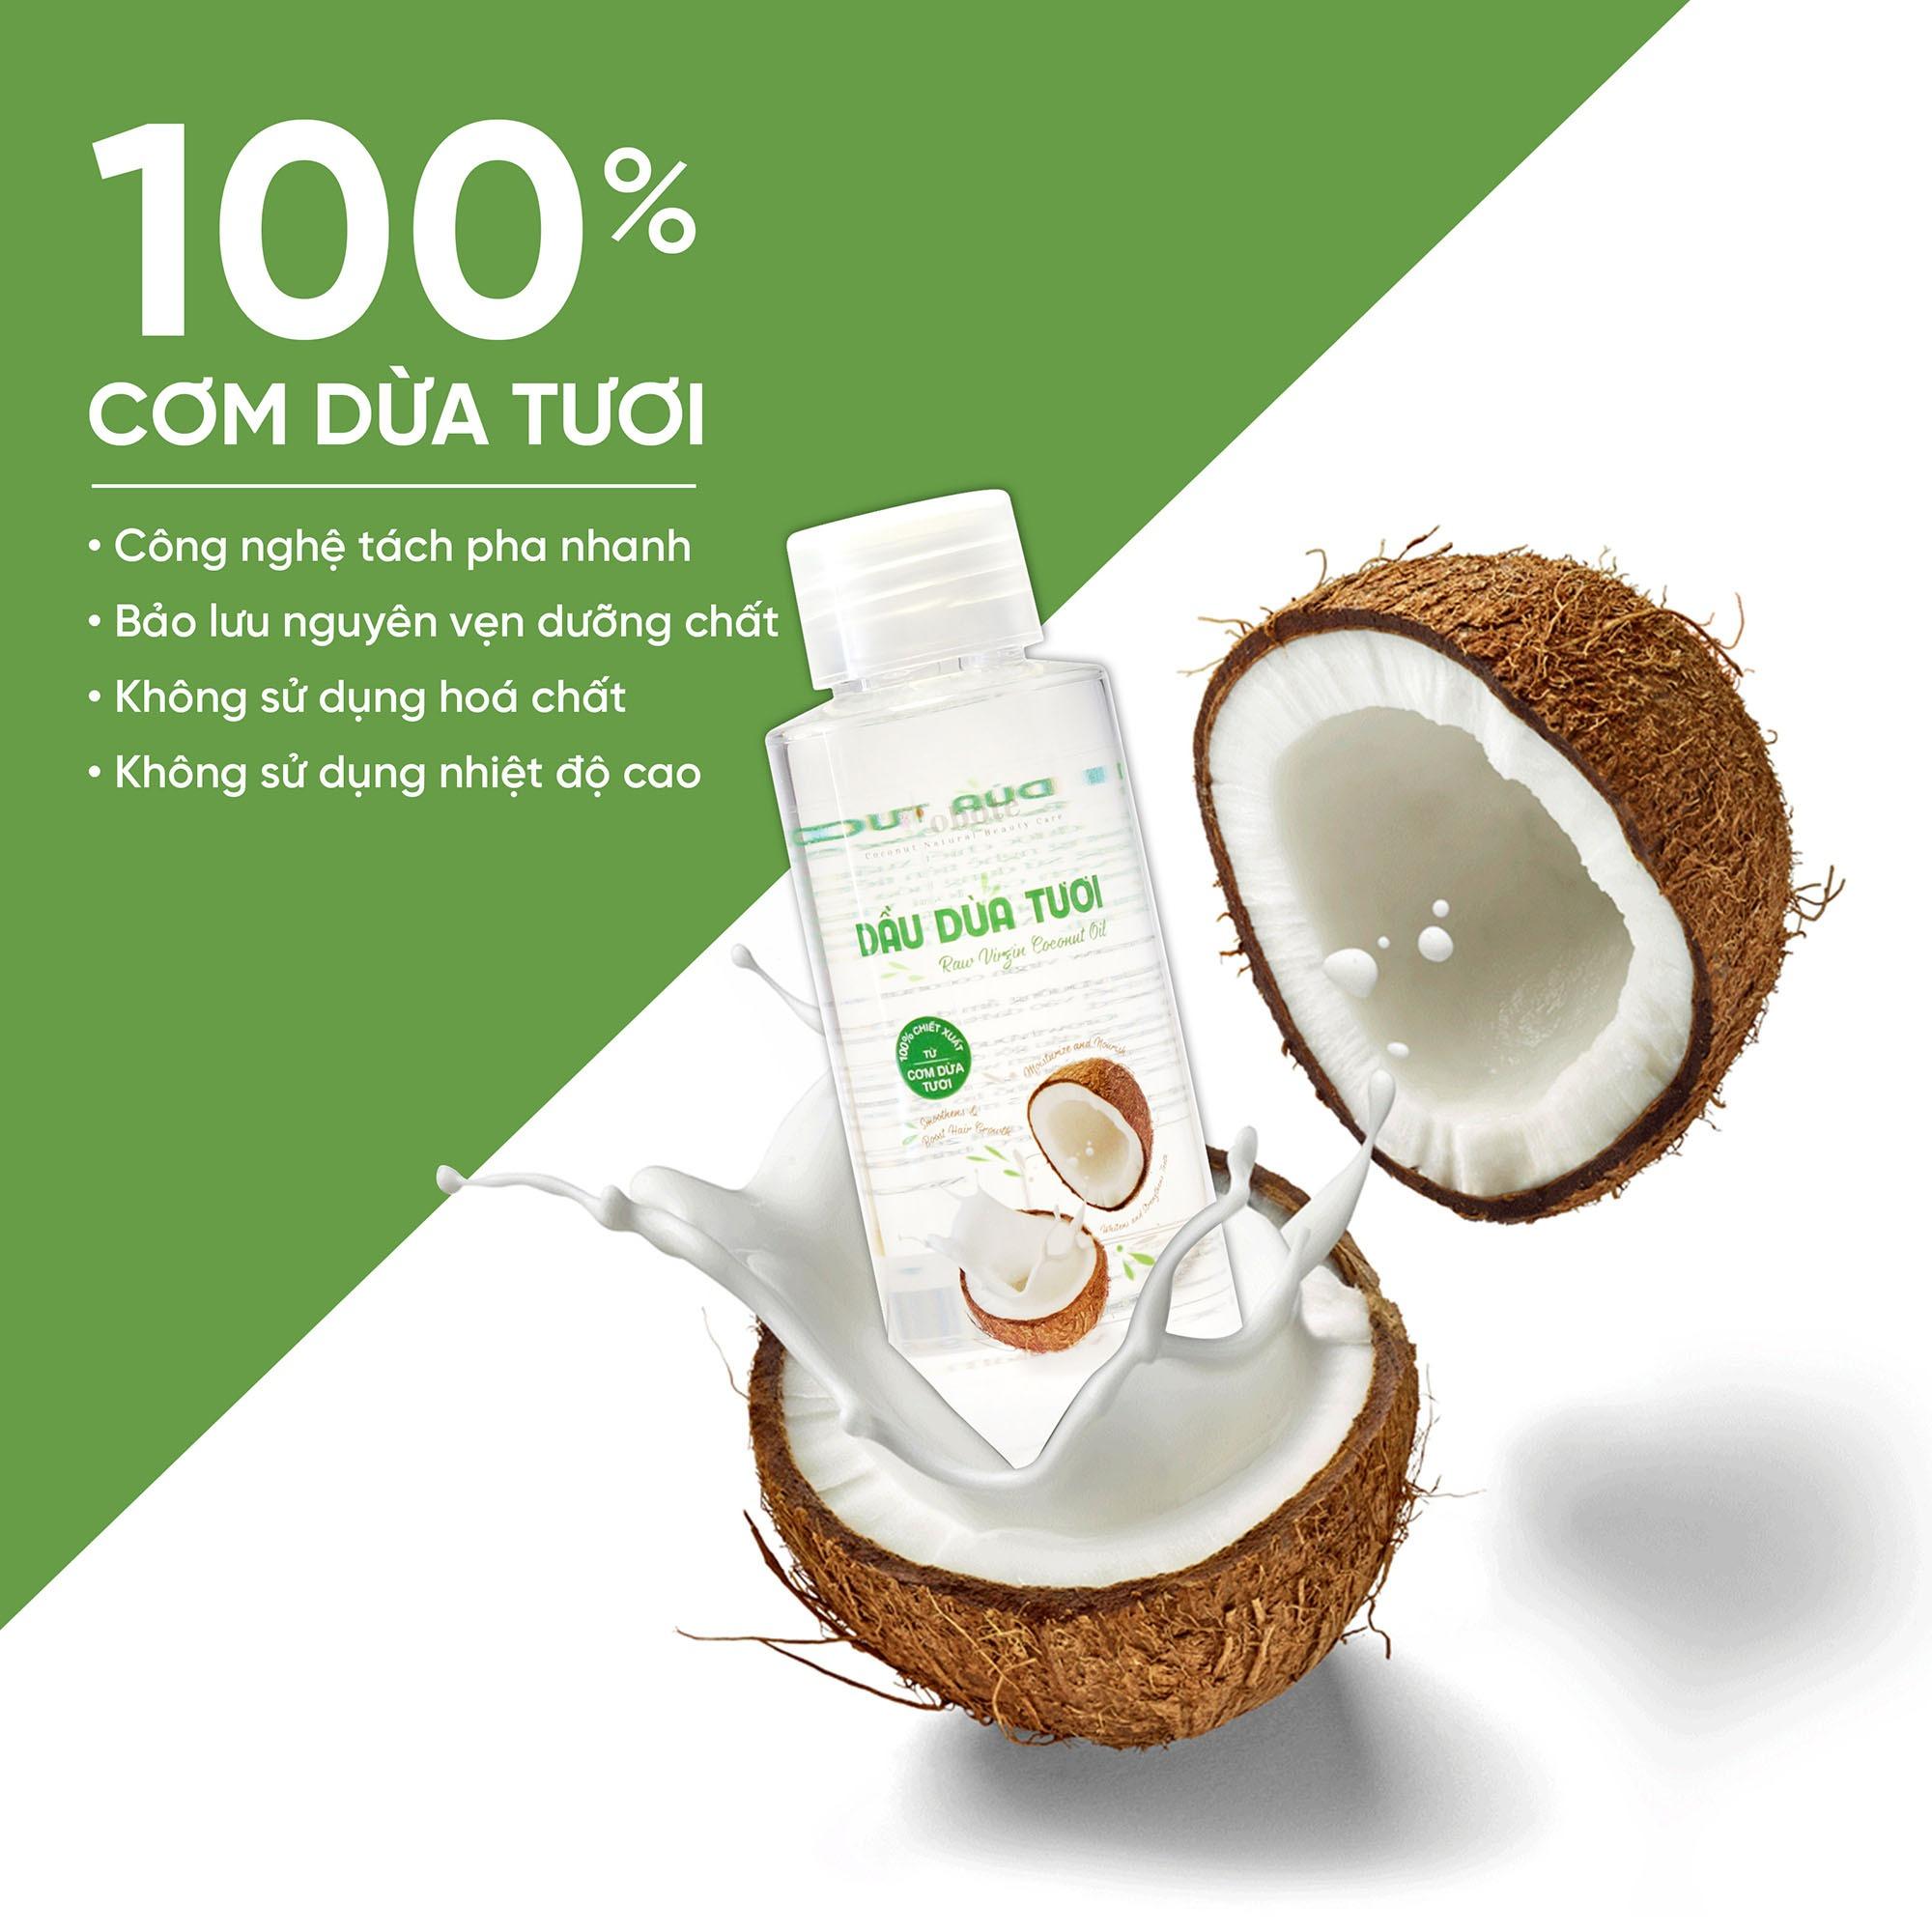 Dầu dừa tươi™ đa năng Coboté - 100% cơm dừa tươi Bến Tre